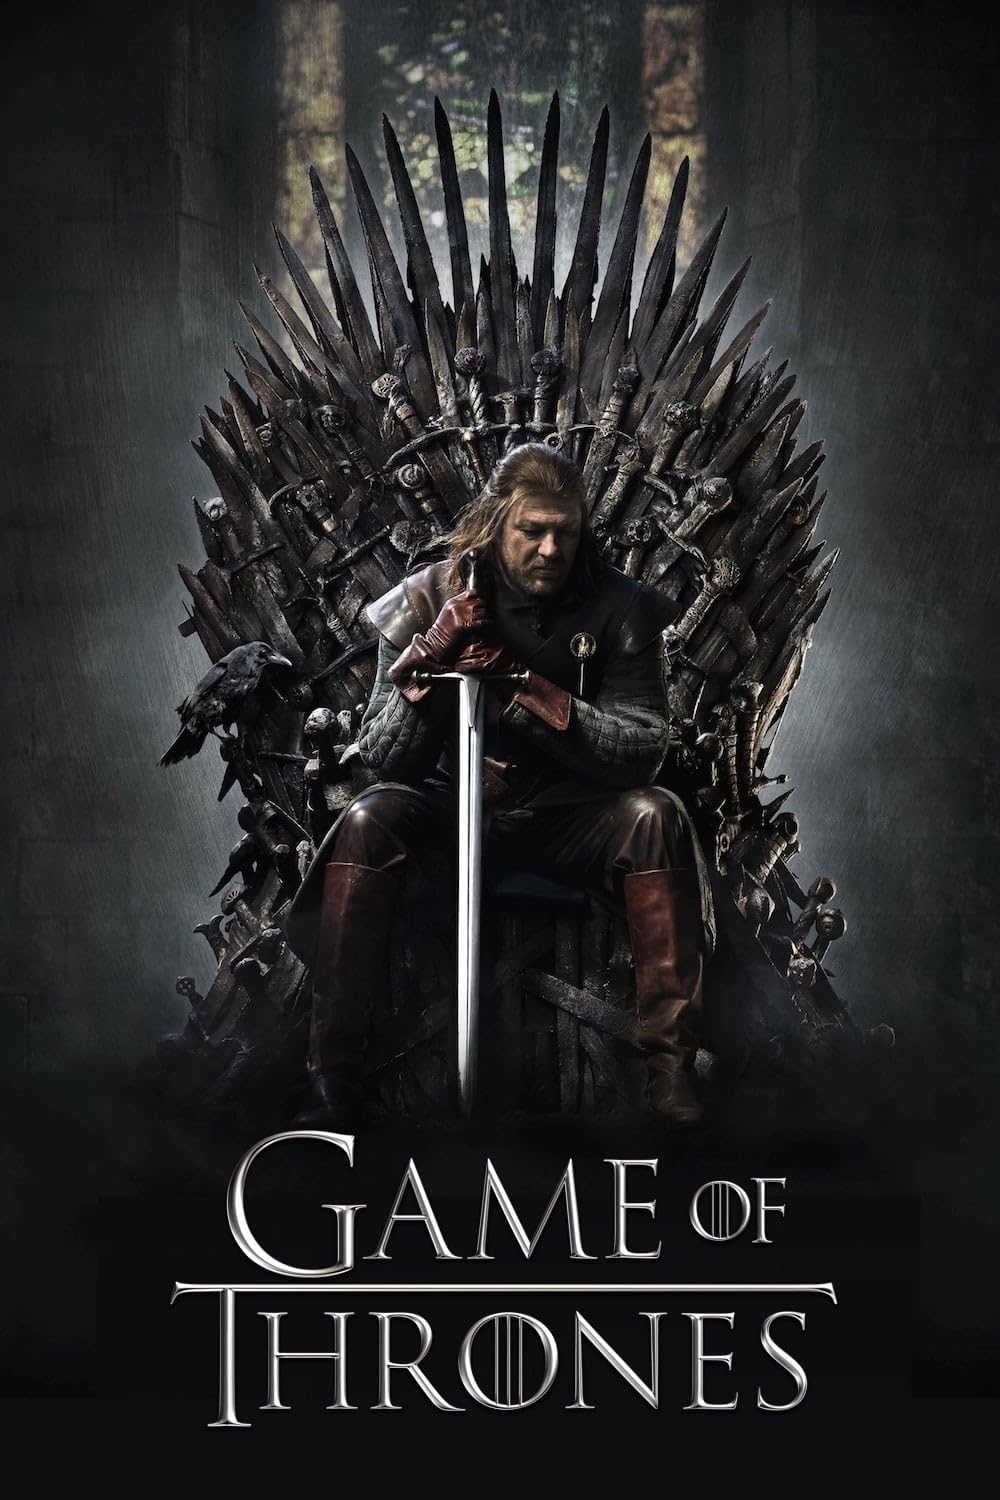 Trò Chơi Vương Quyền – Game of Thrones (2011) Full HD Vietsub – Tập 1